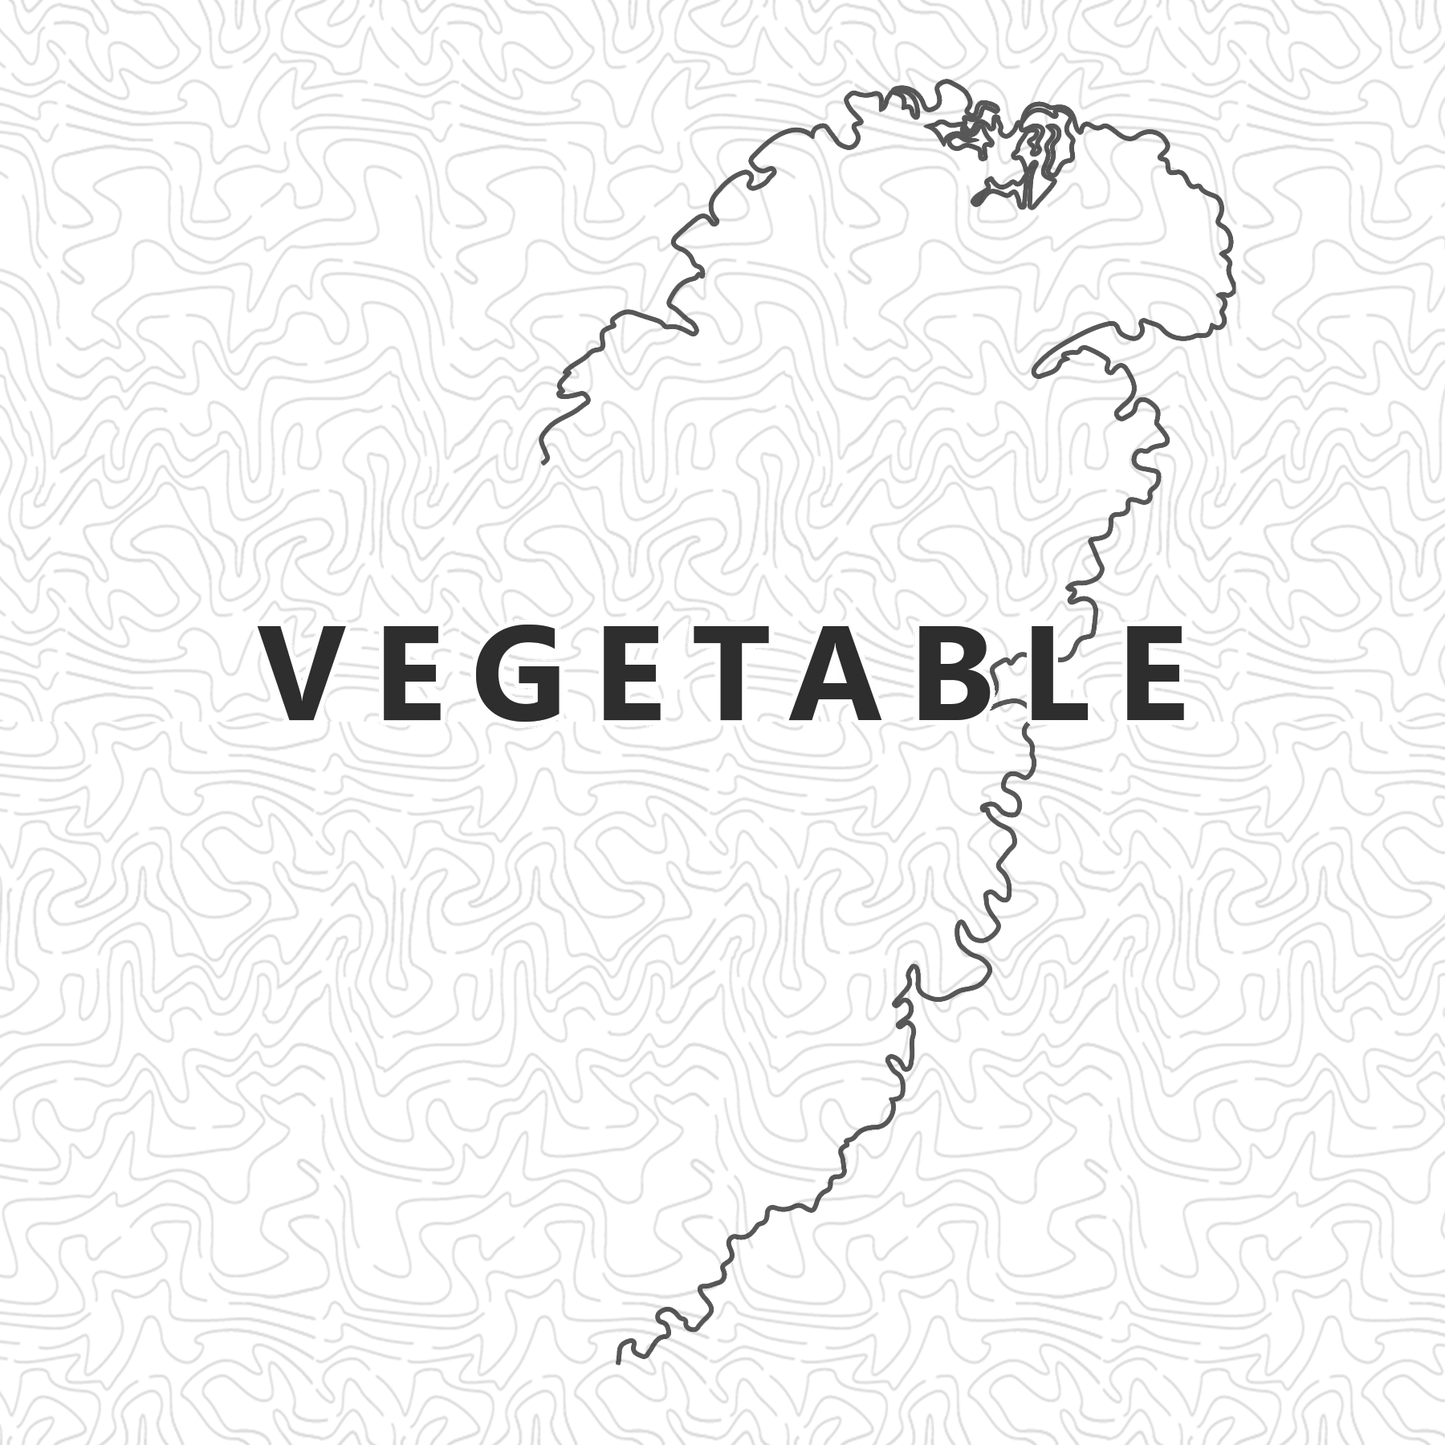 Vegetable (Vegan) Gyoza